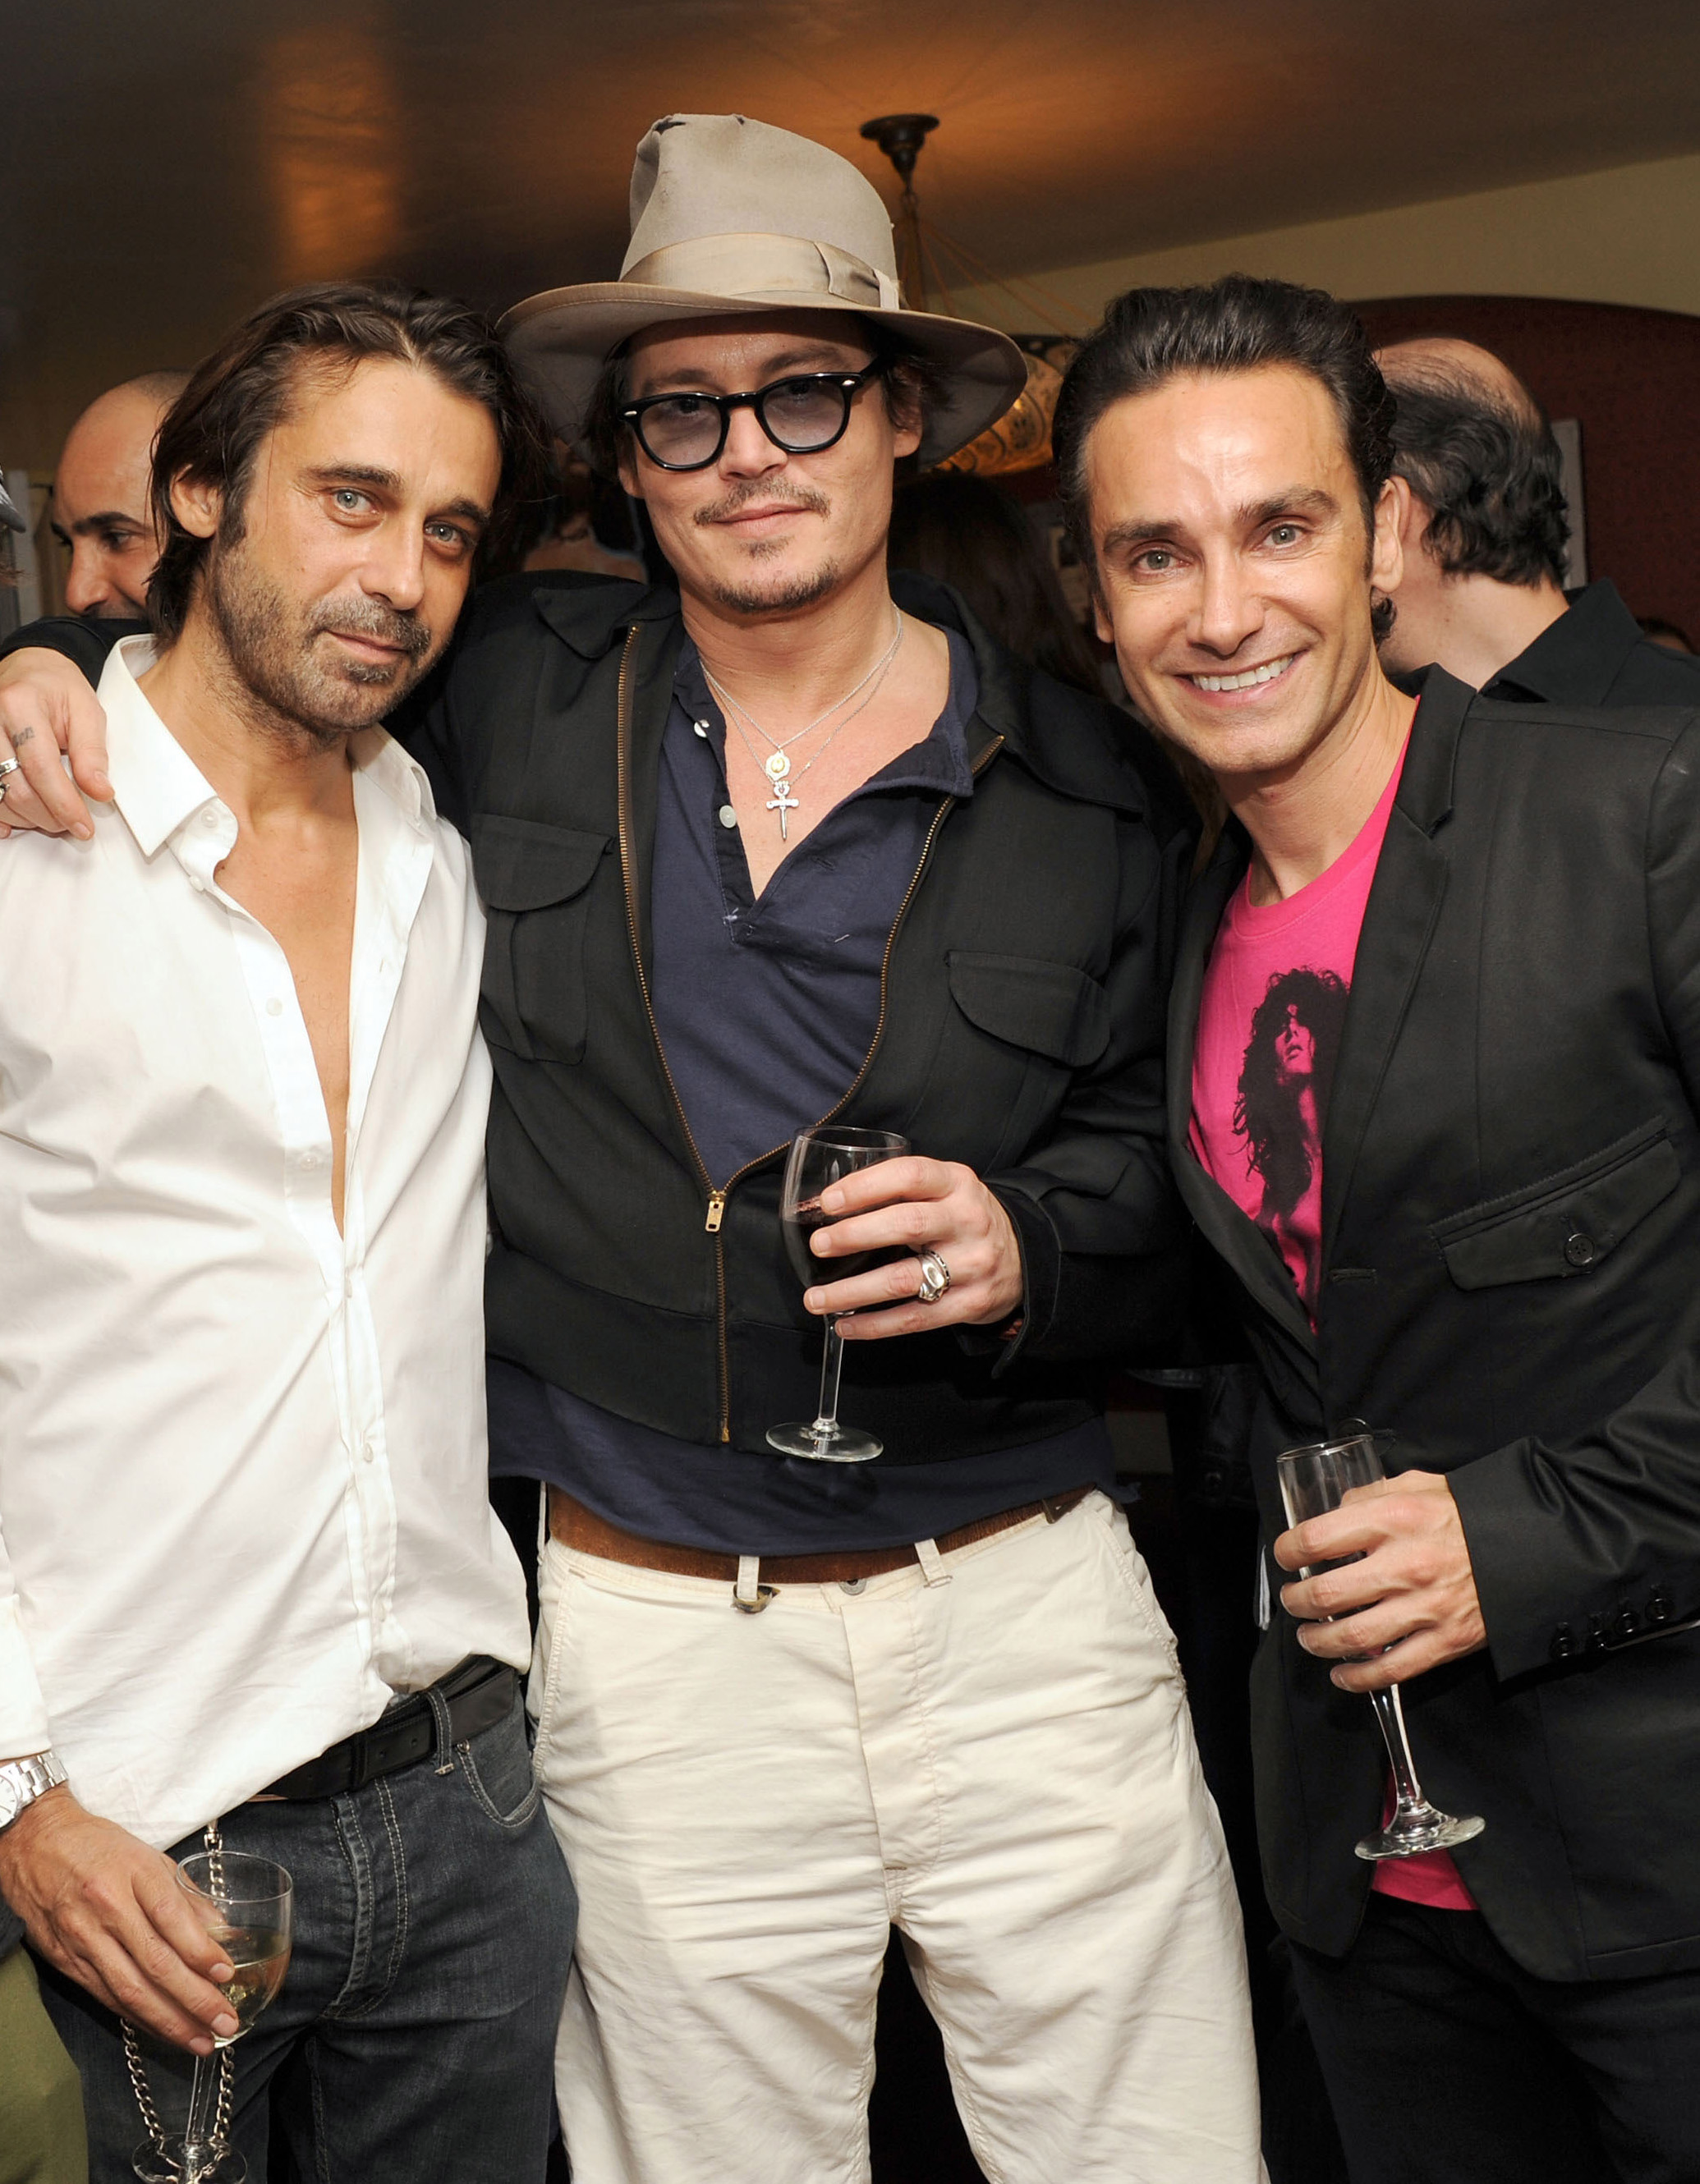 Jordi Molla, Johnny Depp, Antonio Del Prete.